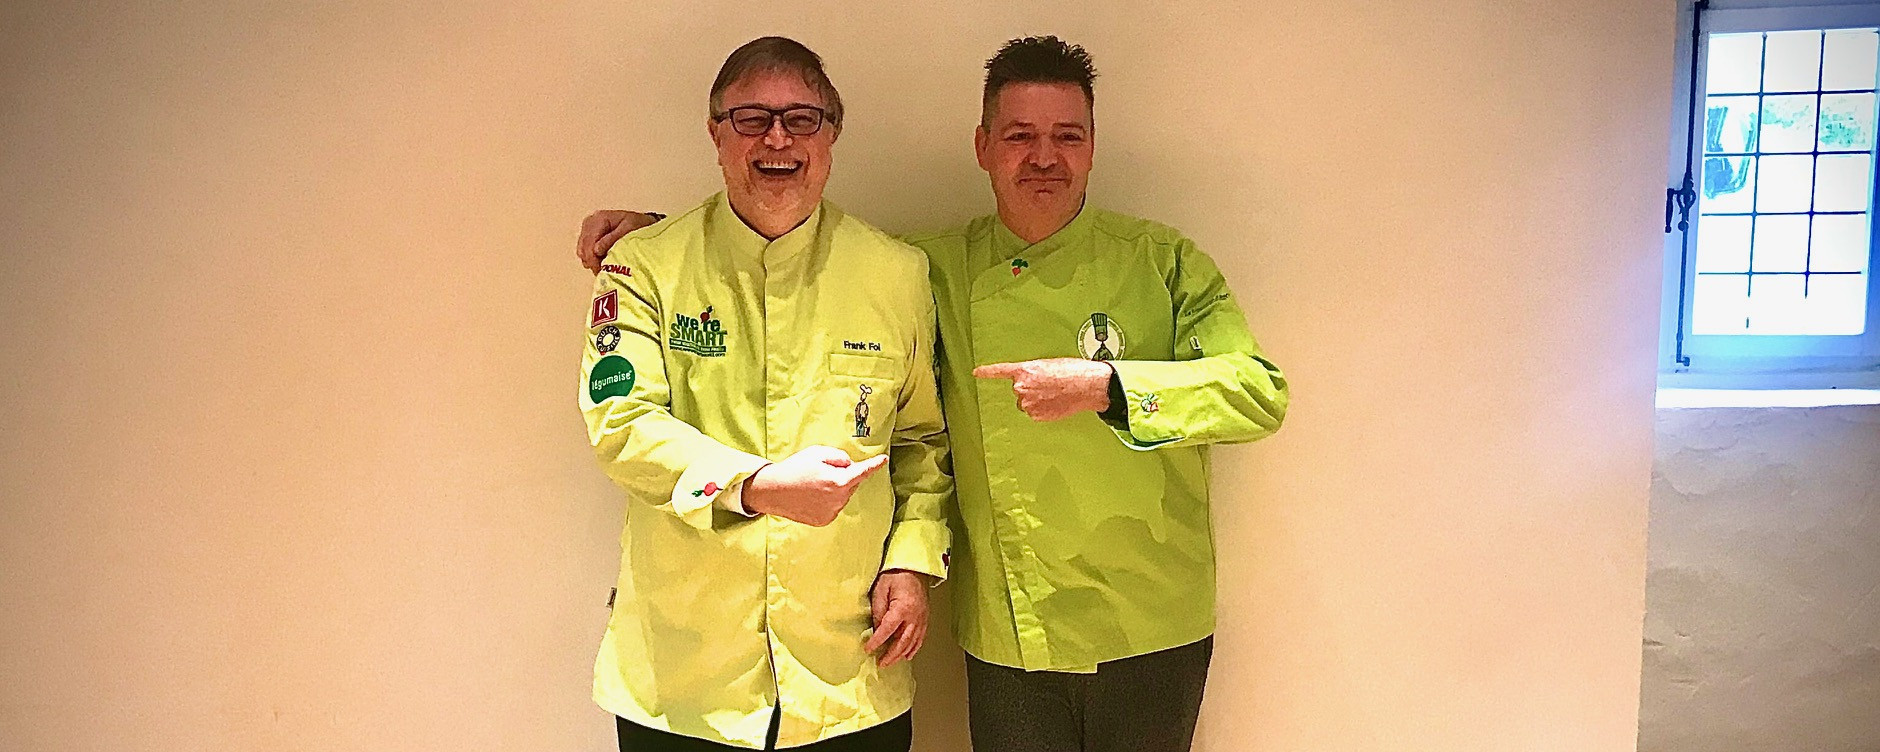 Frank Fol (à gauche) présentait lundi la prochaine cérémonie de remise des prix des meilleurs restaurants végétaux du monde à La Distillerie du chef René Mathieu (à droite). Maison Moderne